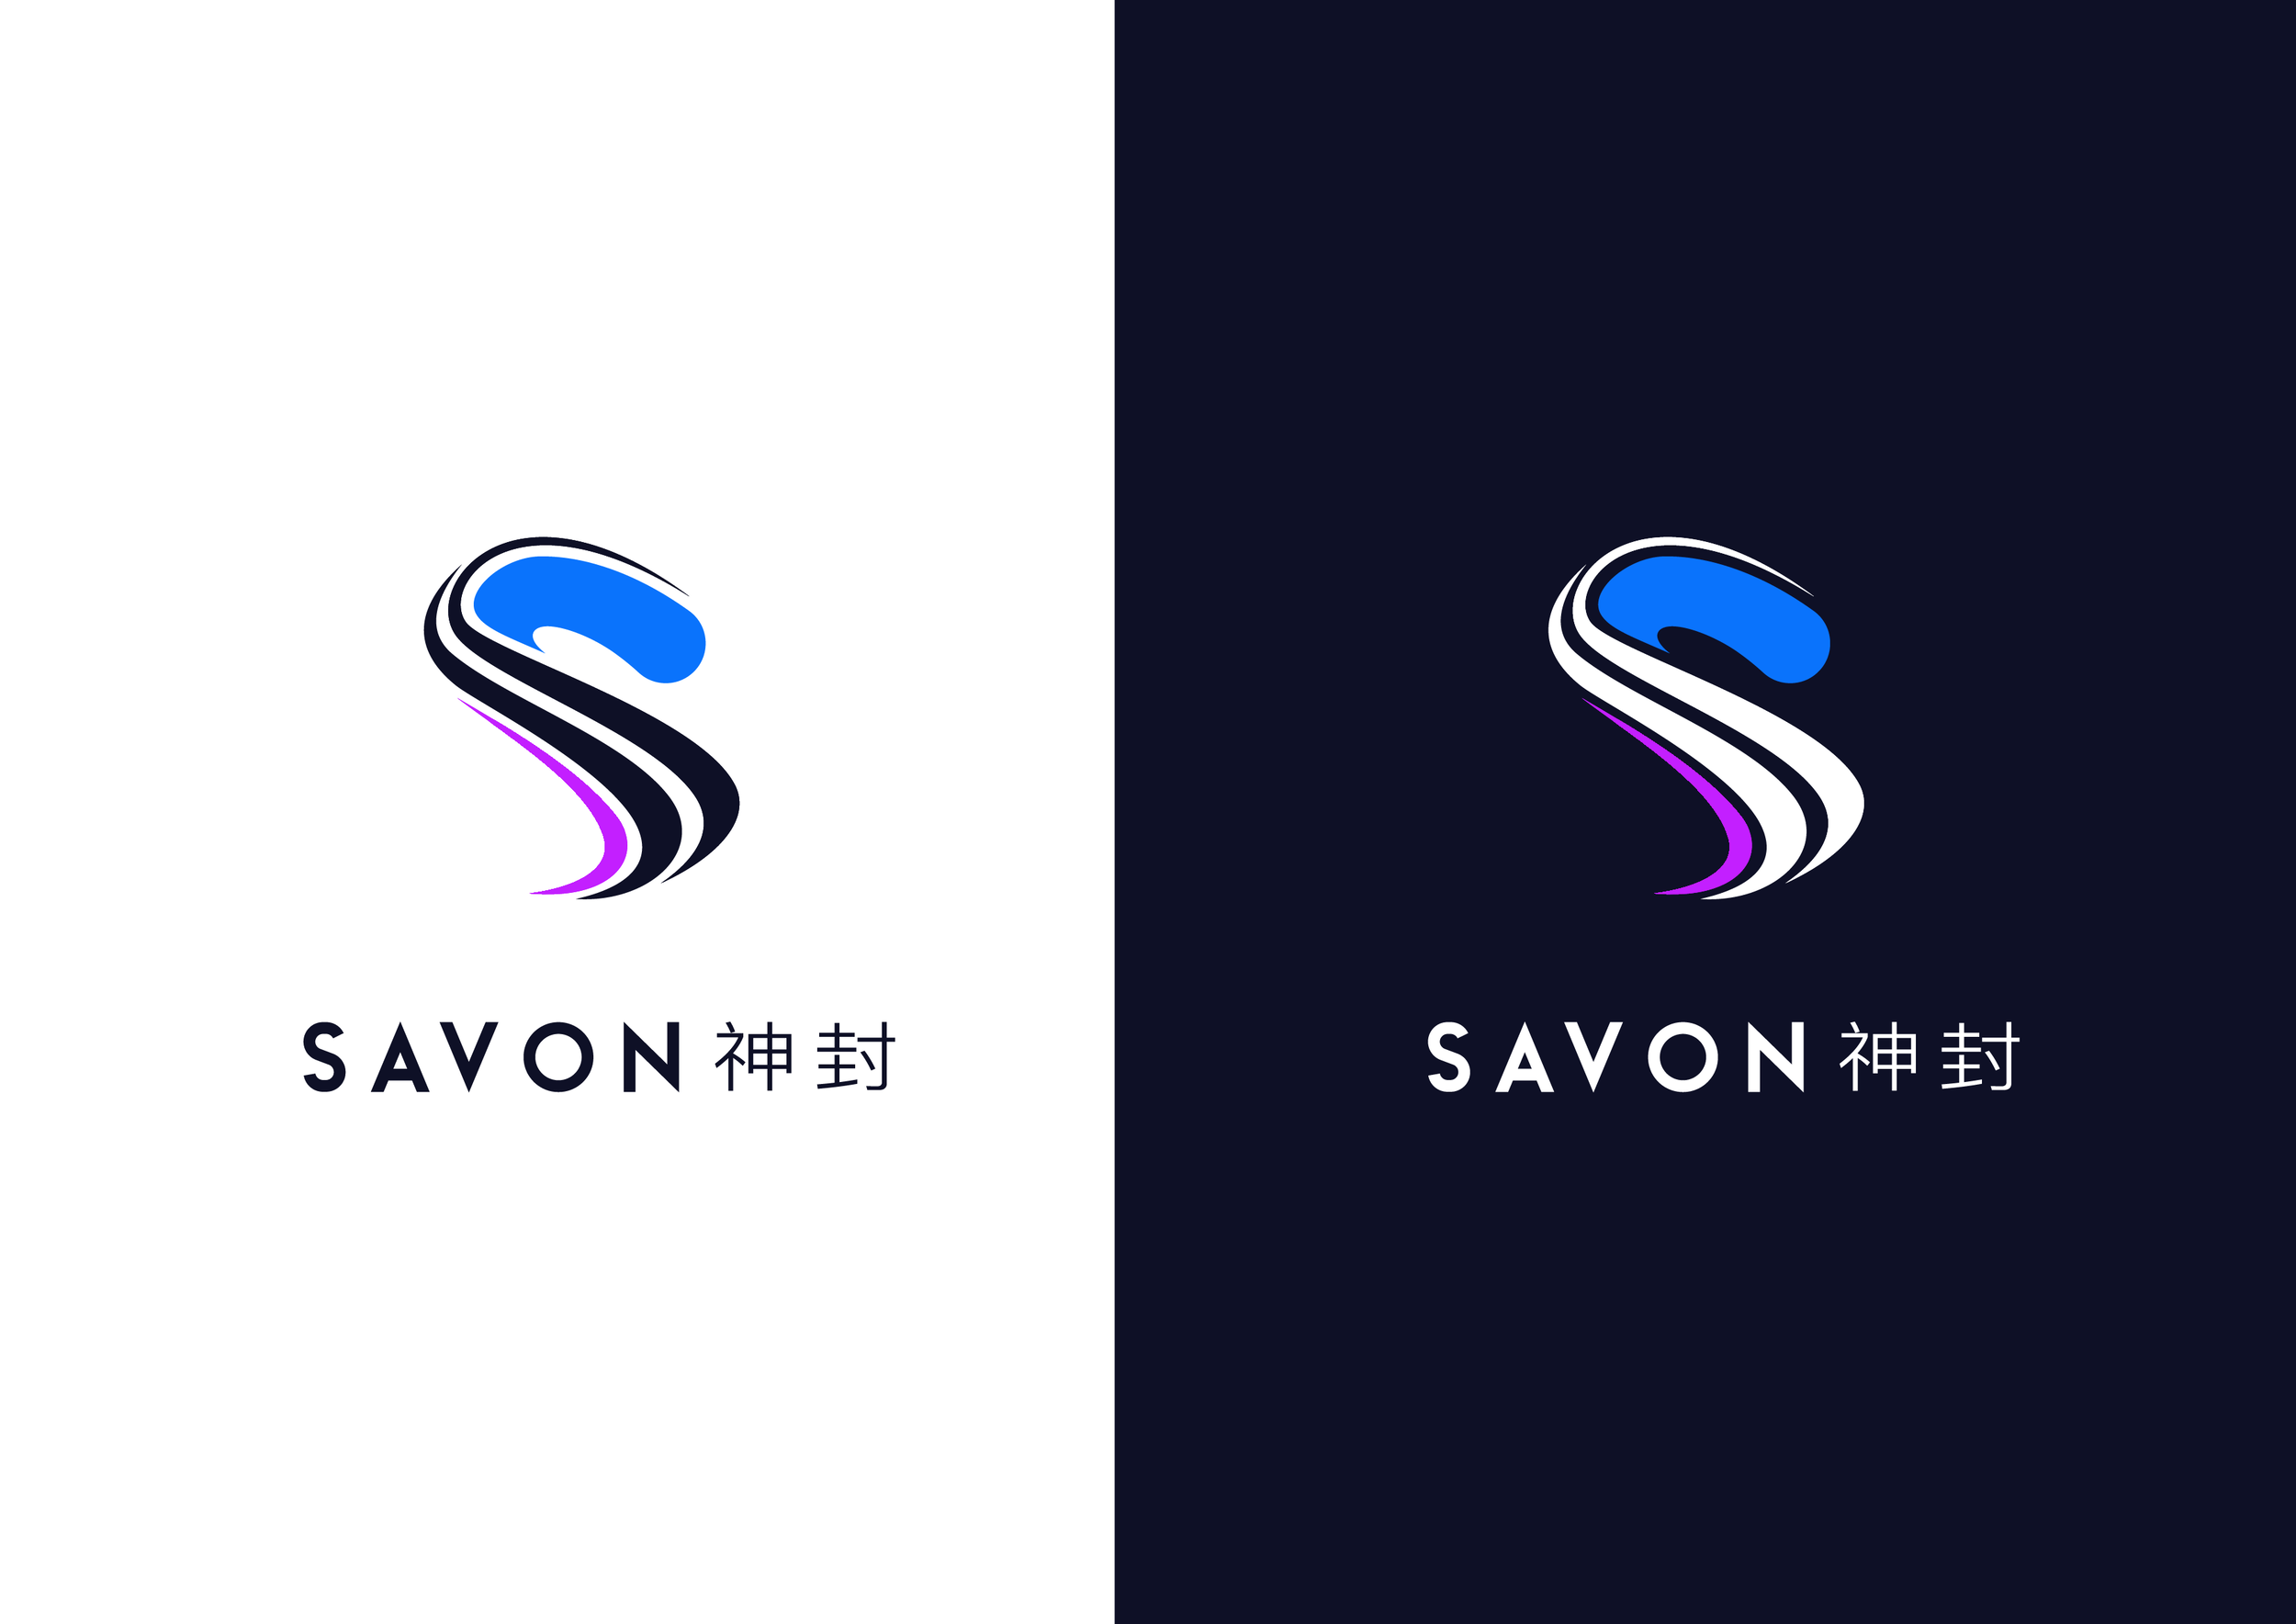 SAVON logos 20201105-02.png